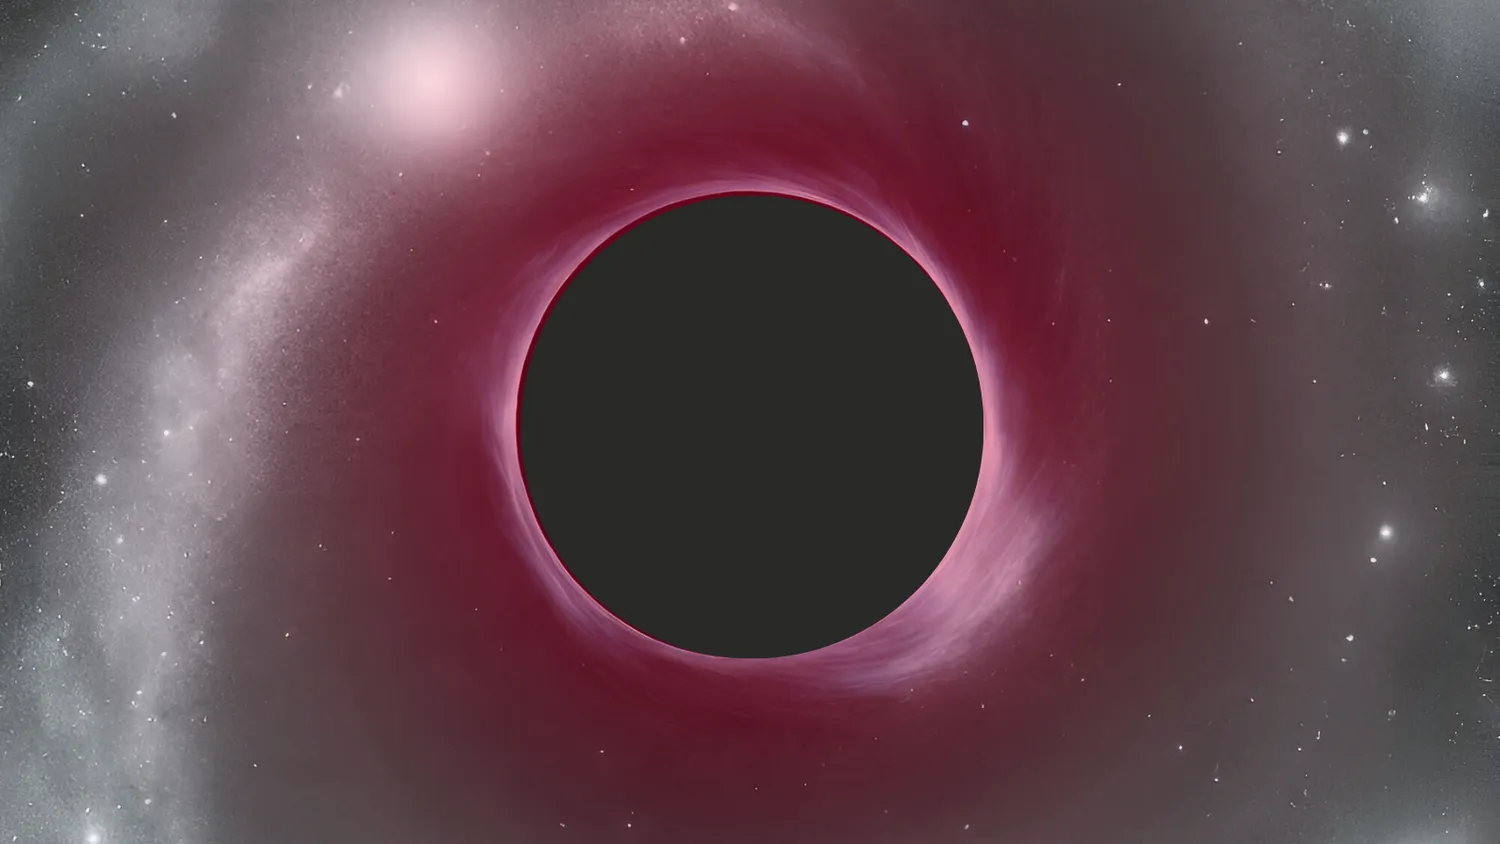 Eine Illustration zeigt ein extrem rotes supermassives schwarzes Loch im frühen Universum.